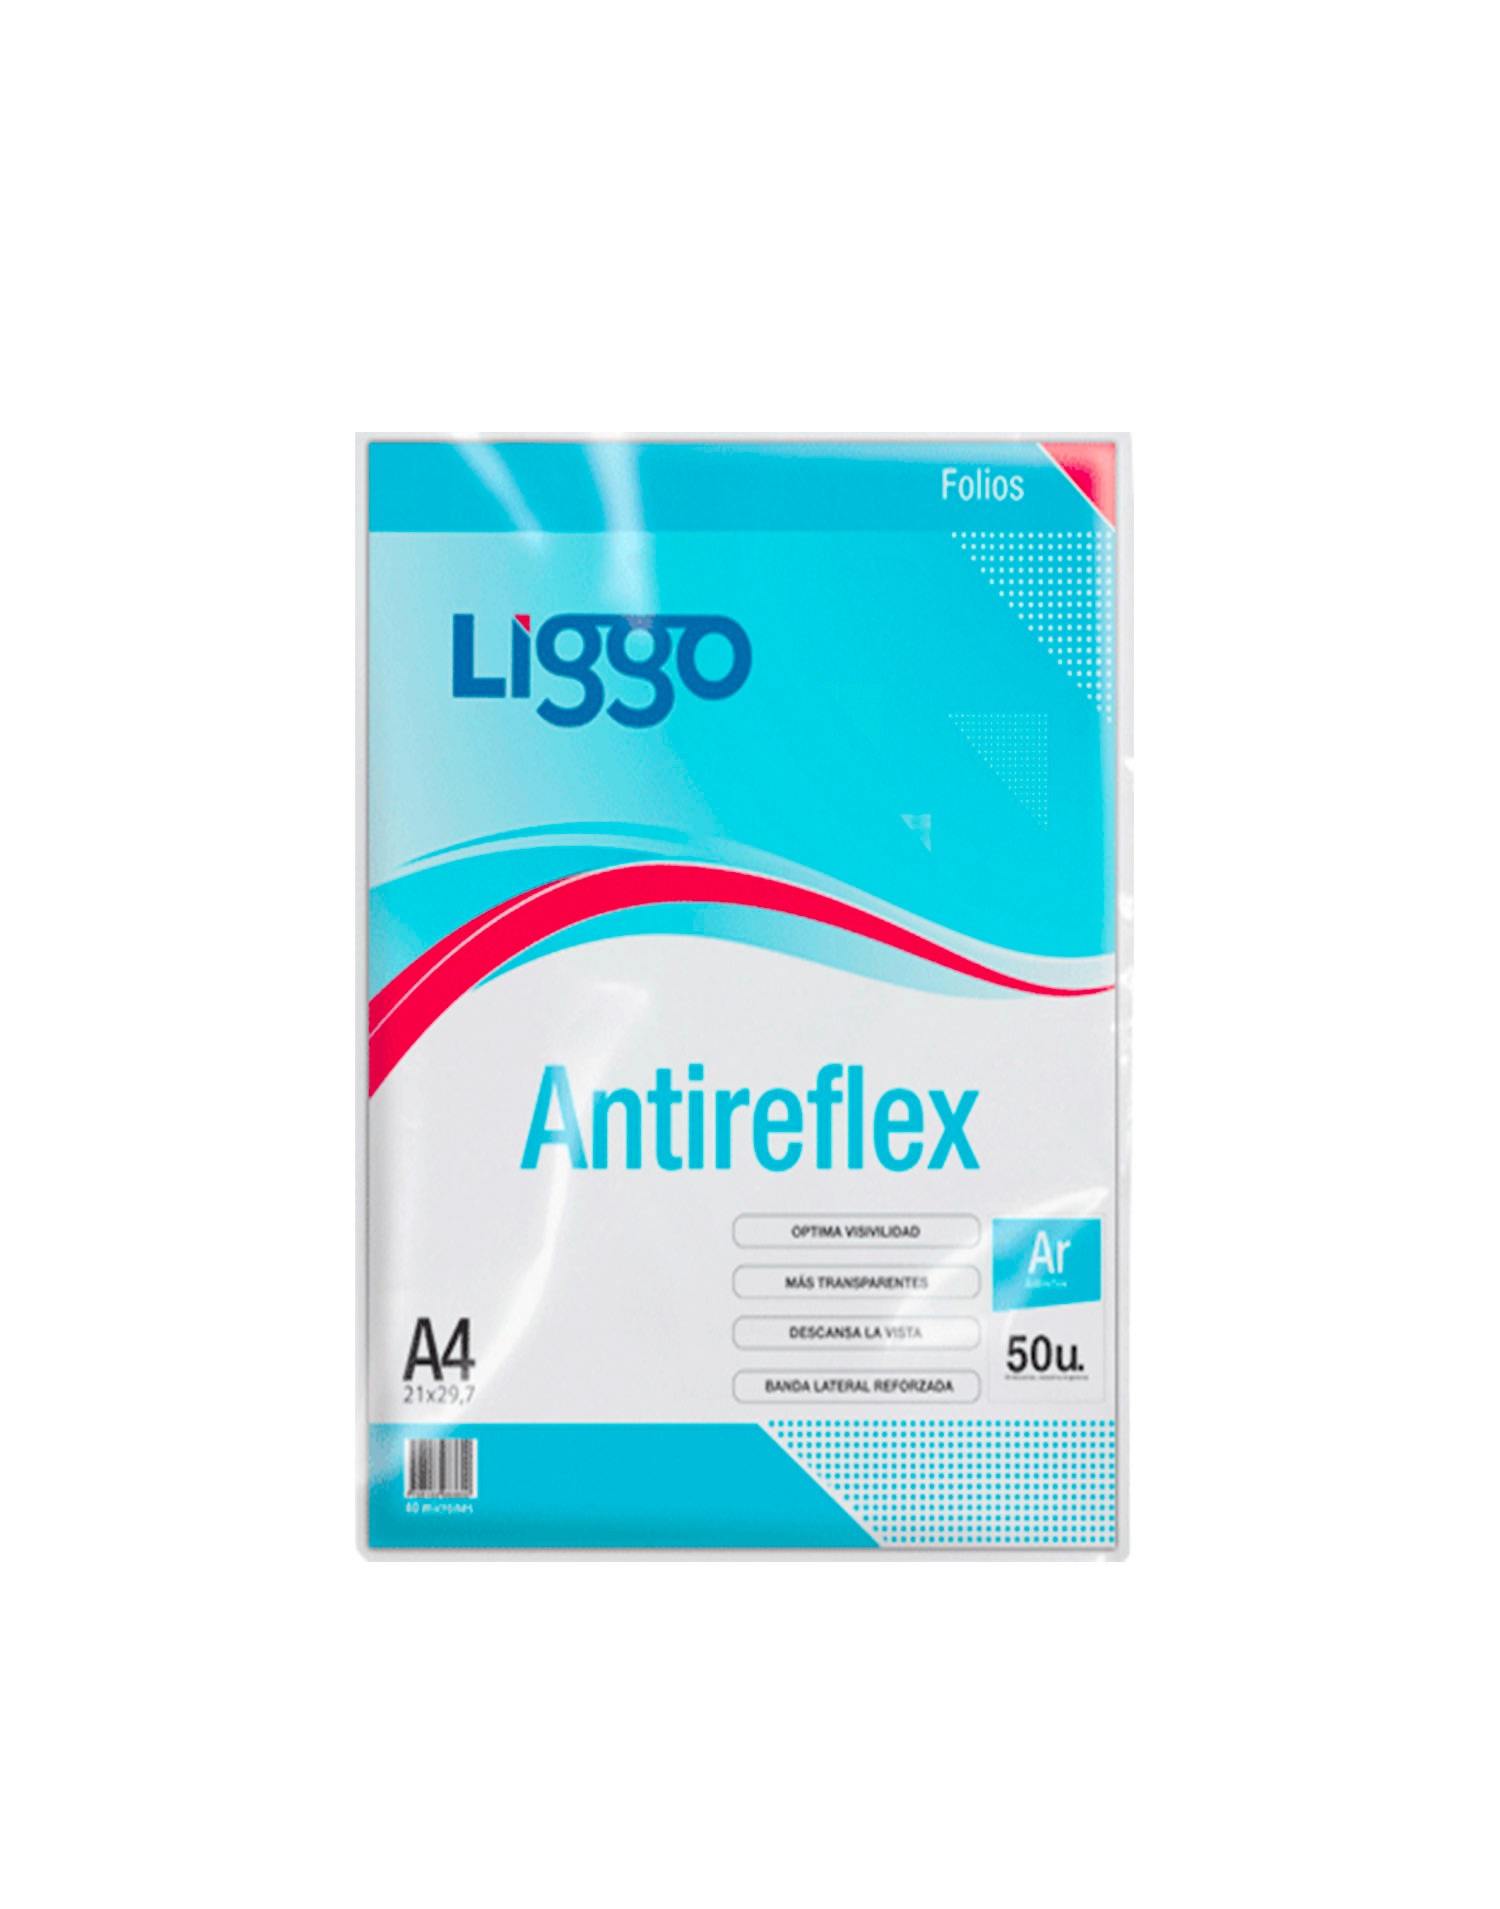 FOLIO LIGGO A4 ANTIREFLEX X 50U. (375-0100)